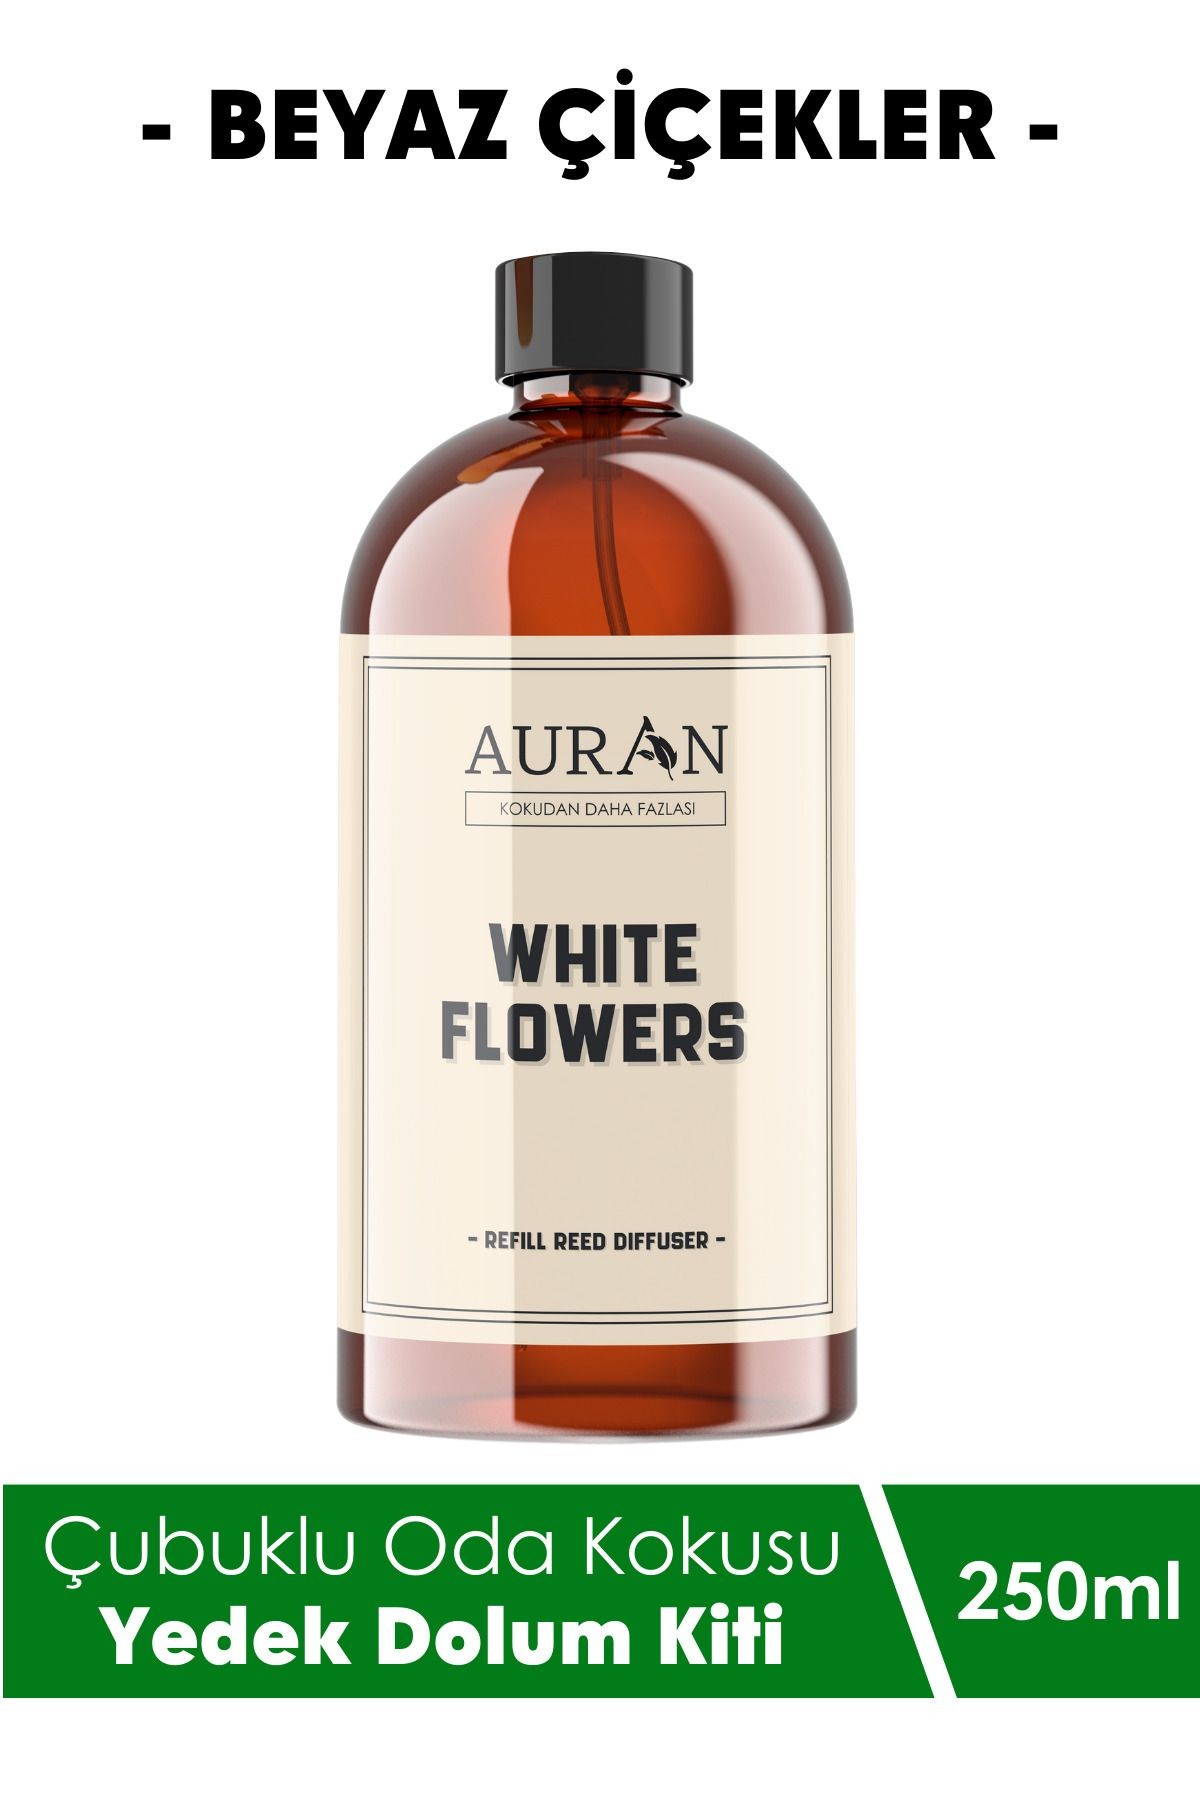 Beyaz Çiçekler Yedek Çubuklu Oda Ve Ortam Kokusu Esansı Yedek Dolum White Flowers 250ml